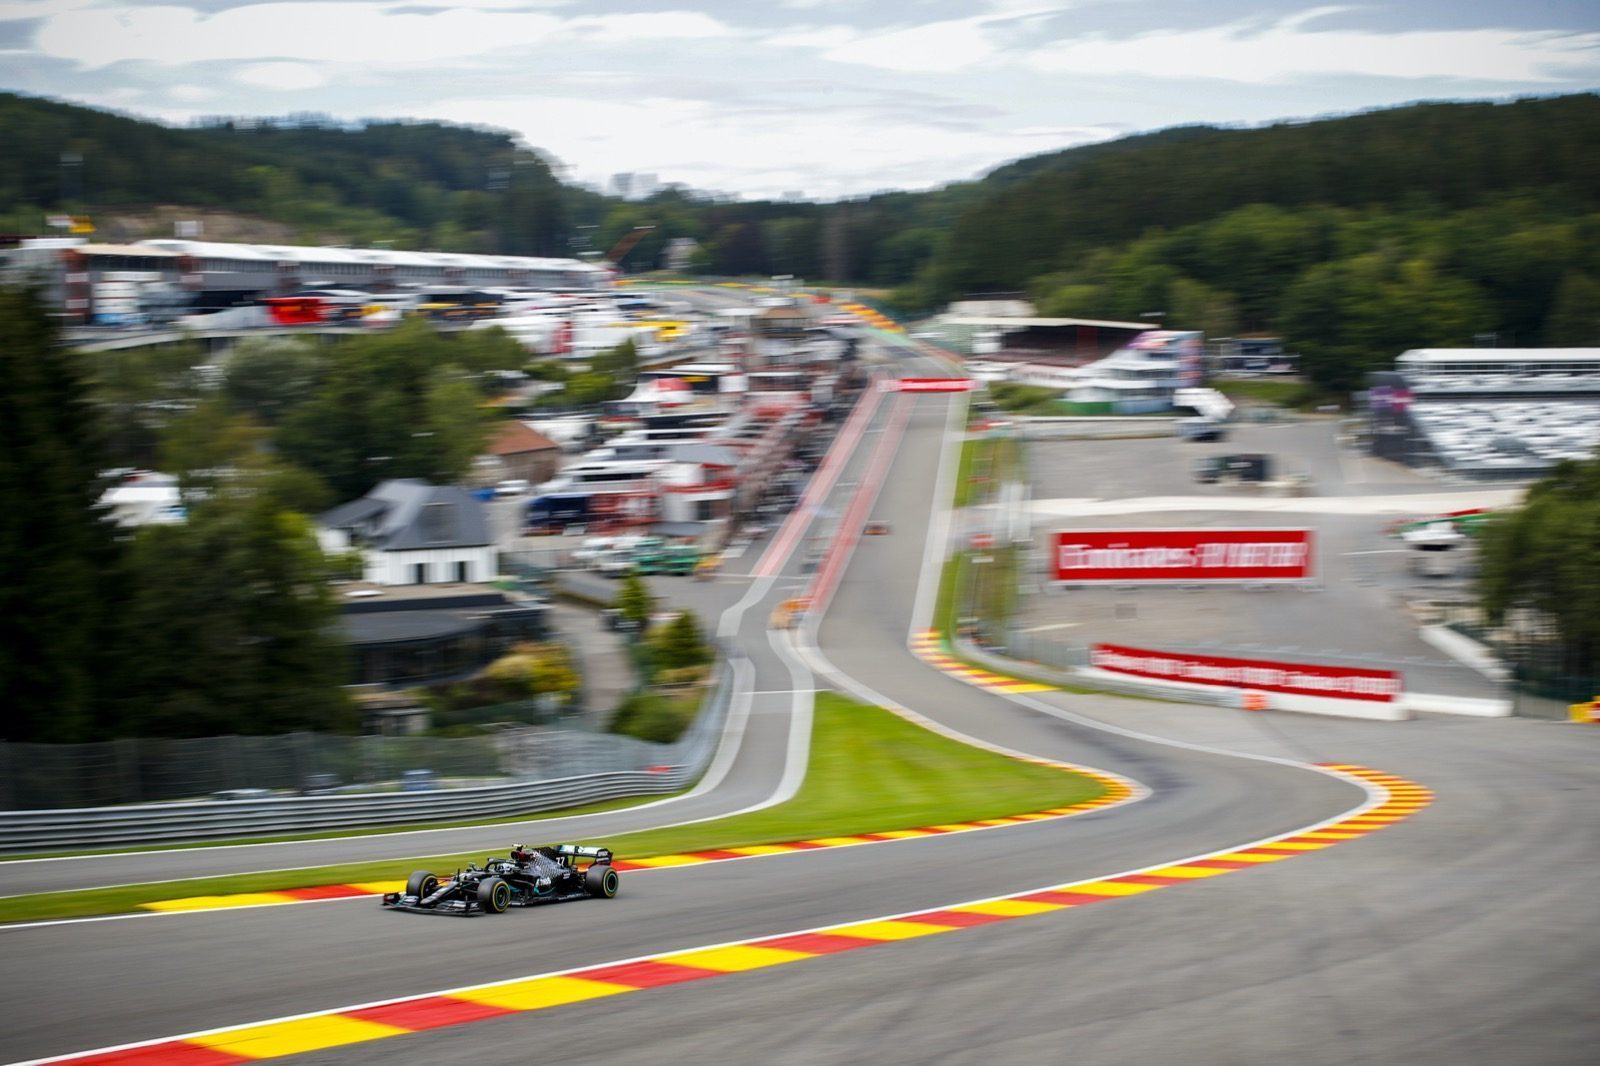 Brood Onschuld geestelijke Mercedes: "Ricciardo is het snelst vandaag" - Autoblog.nl